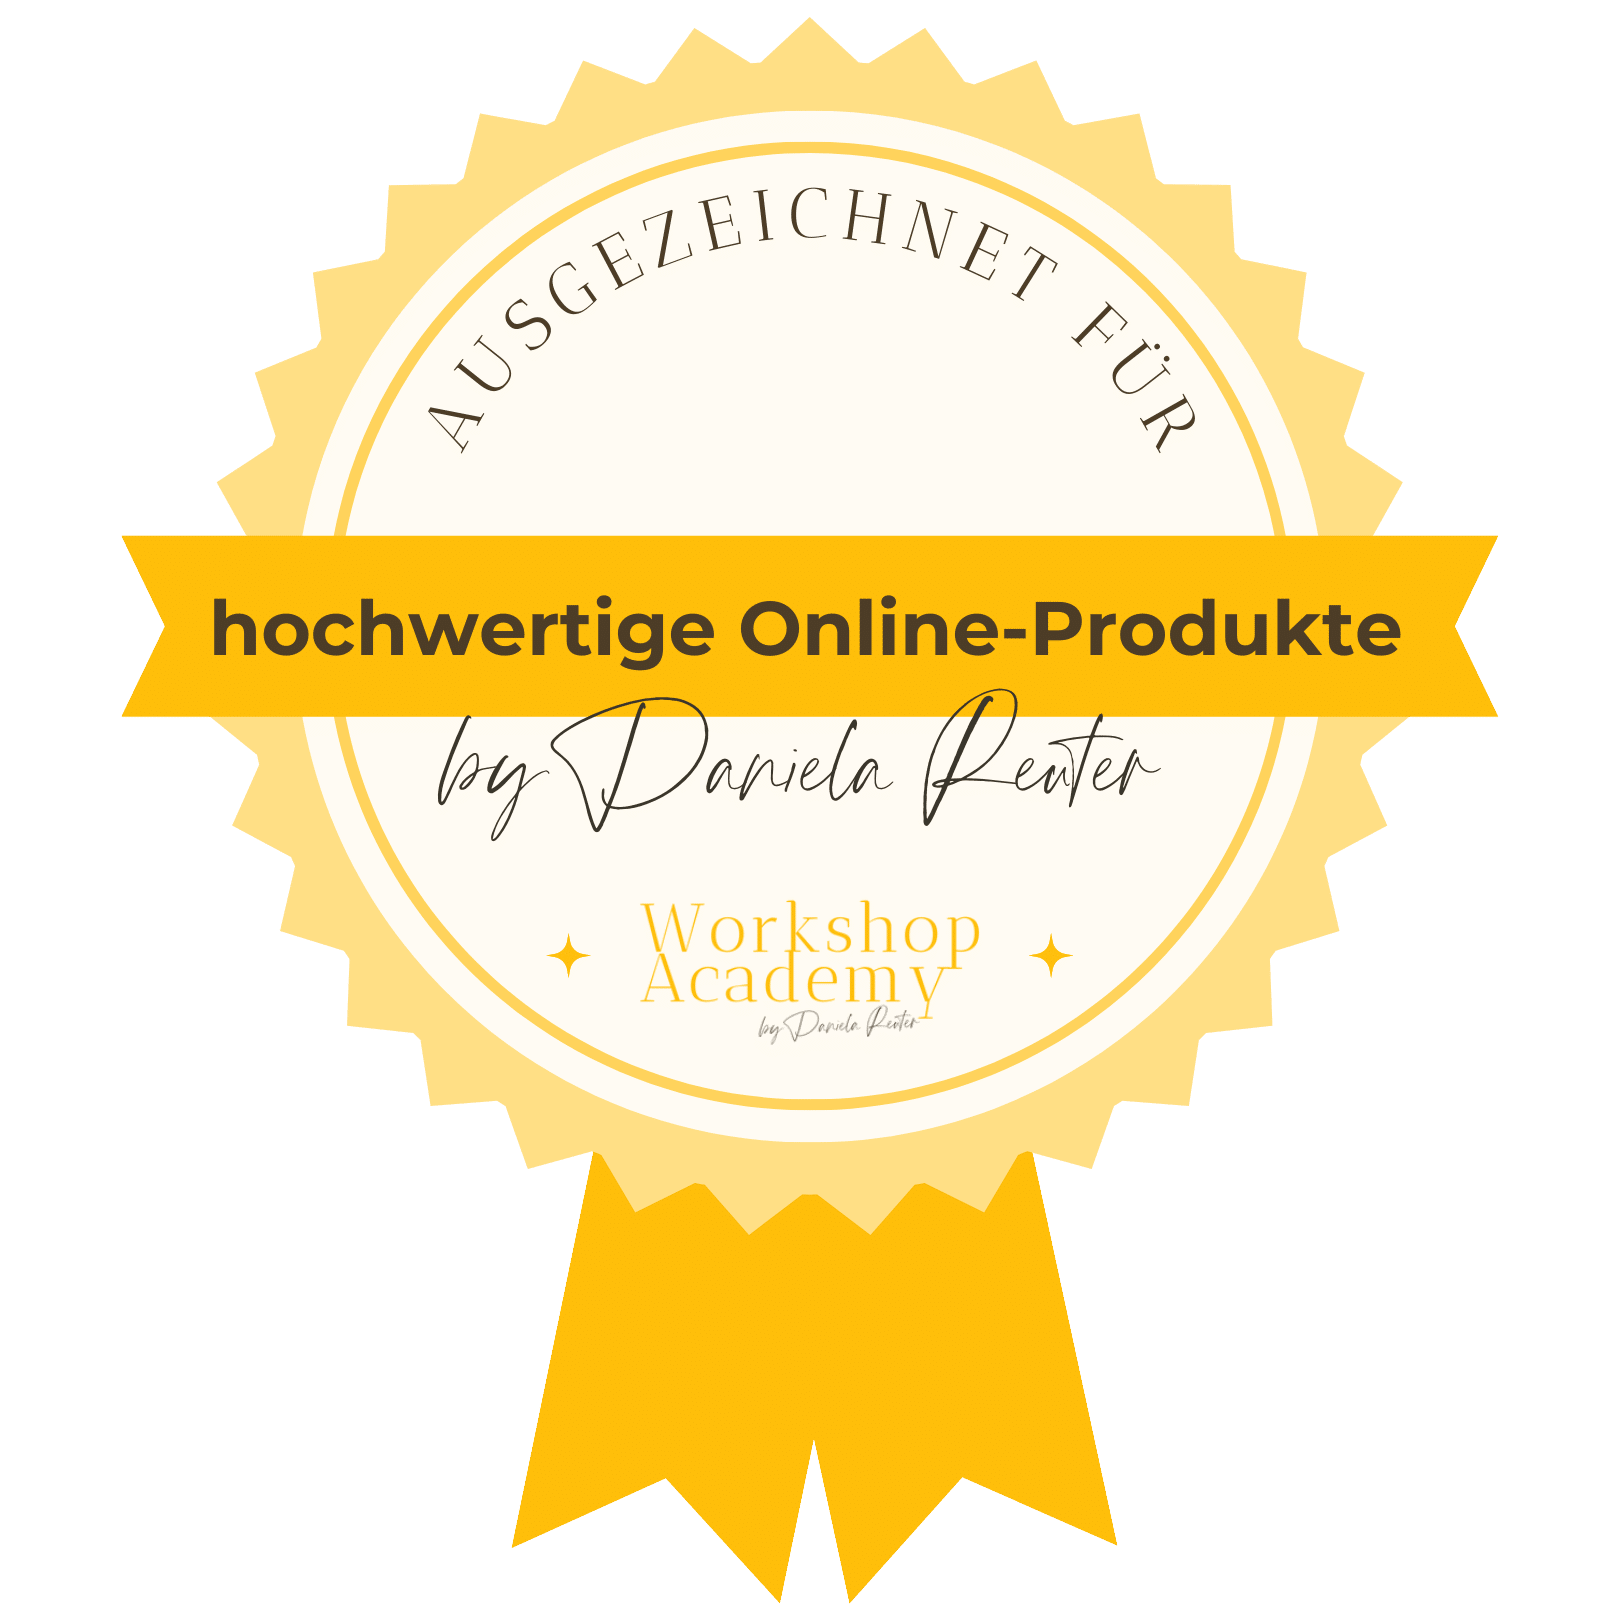 Hochwertige Online-Produkte Siegel by Daniela Reuter